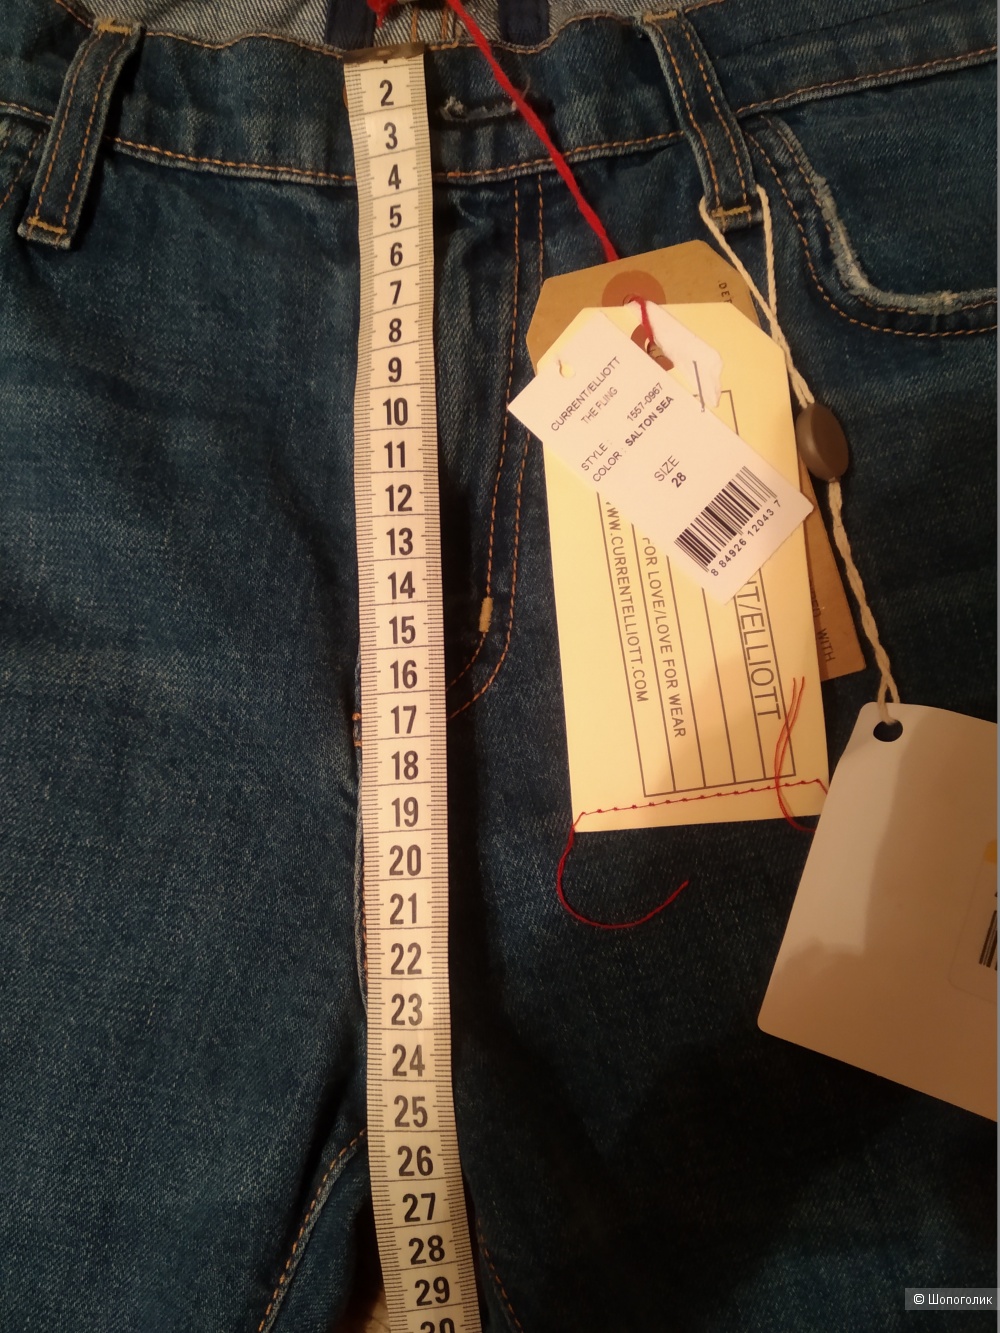 Женские джинсы CURRENT/ELLIOTT 28  размер